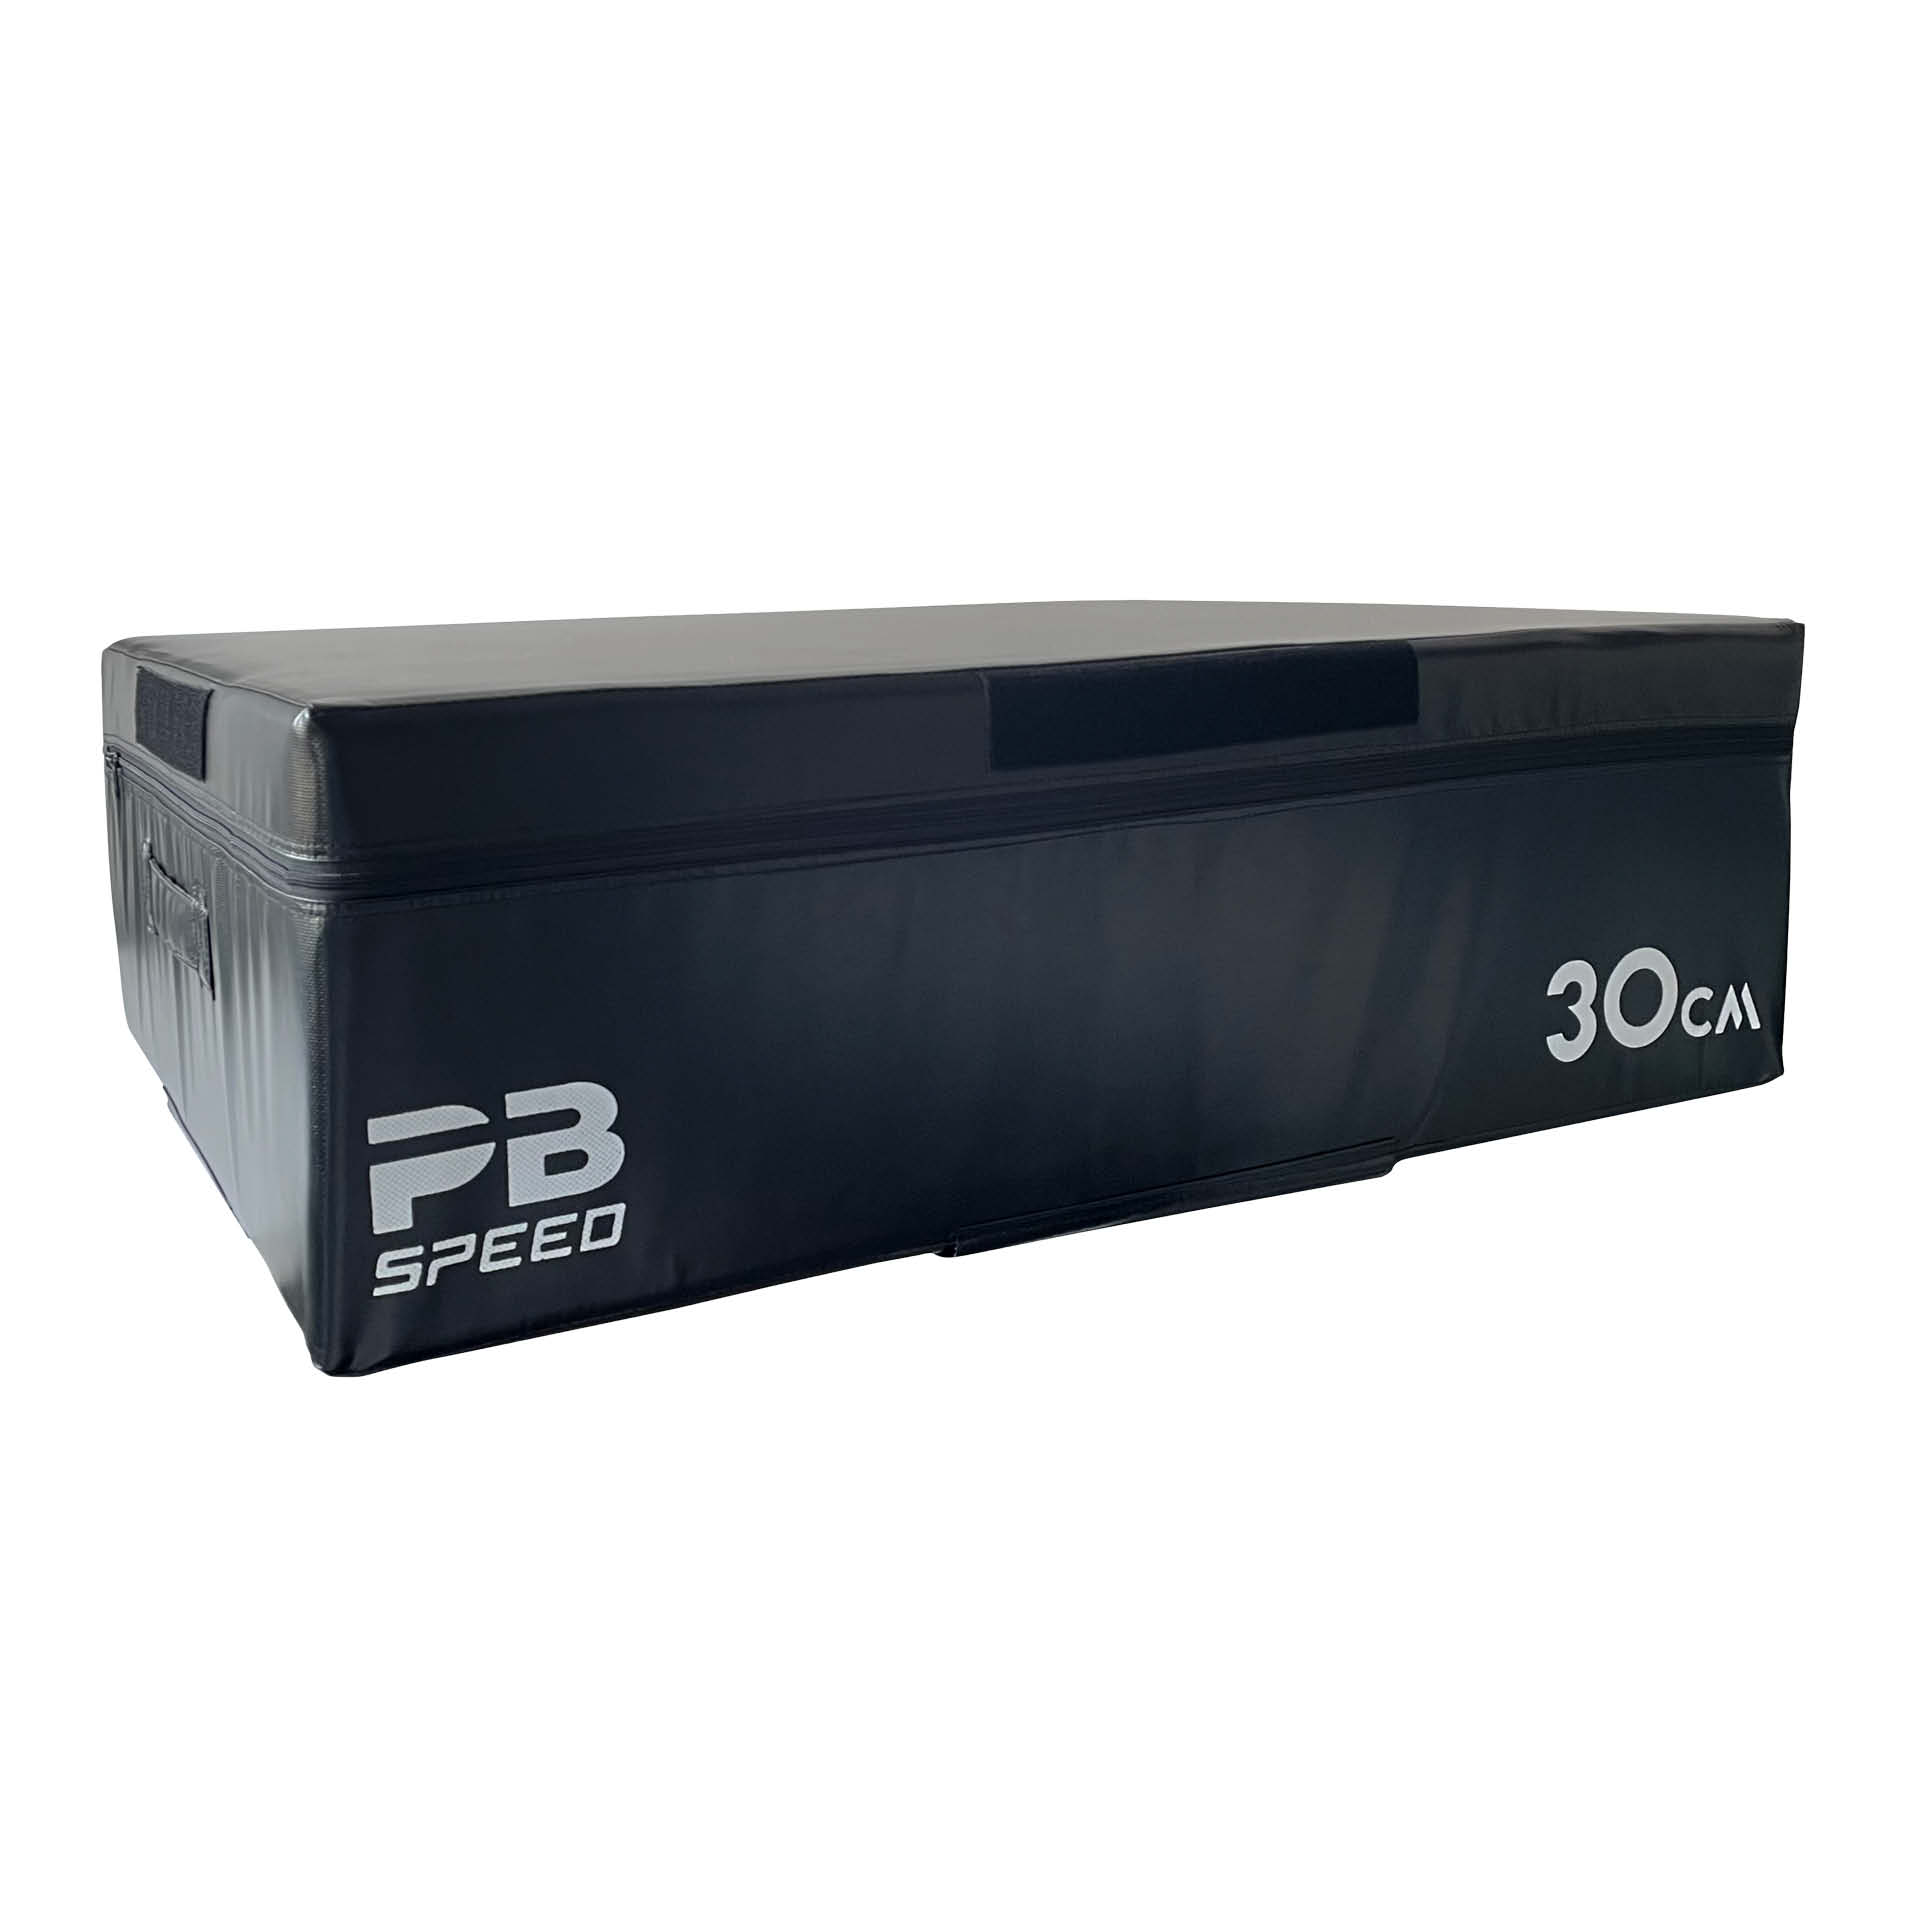 PB Speed Soft Plyo Box schwarz - 30 cm - einzeln